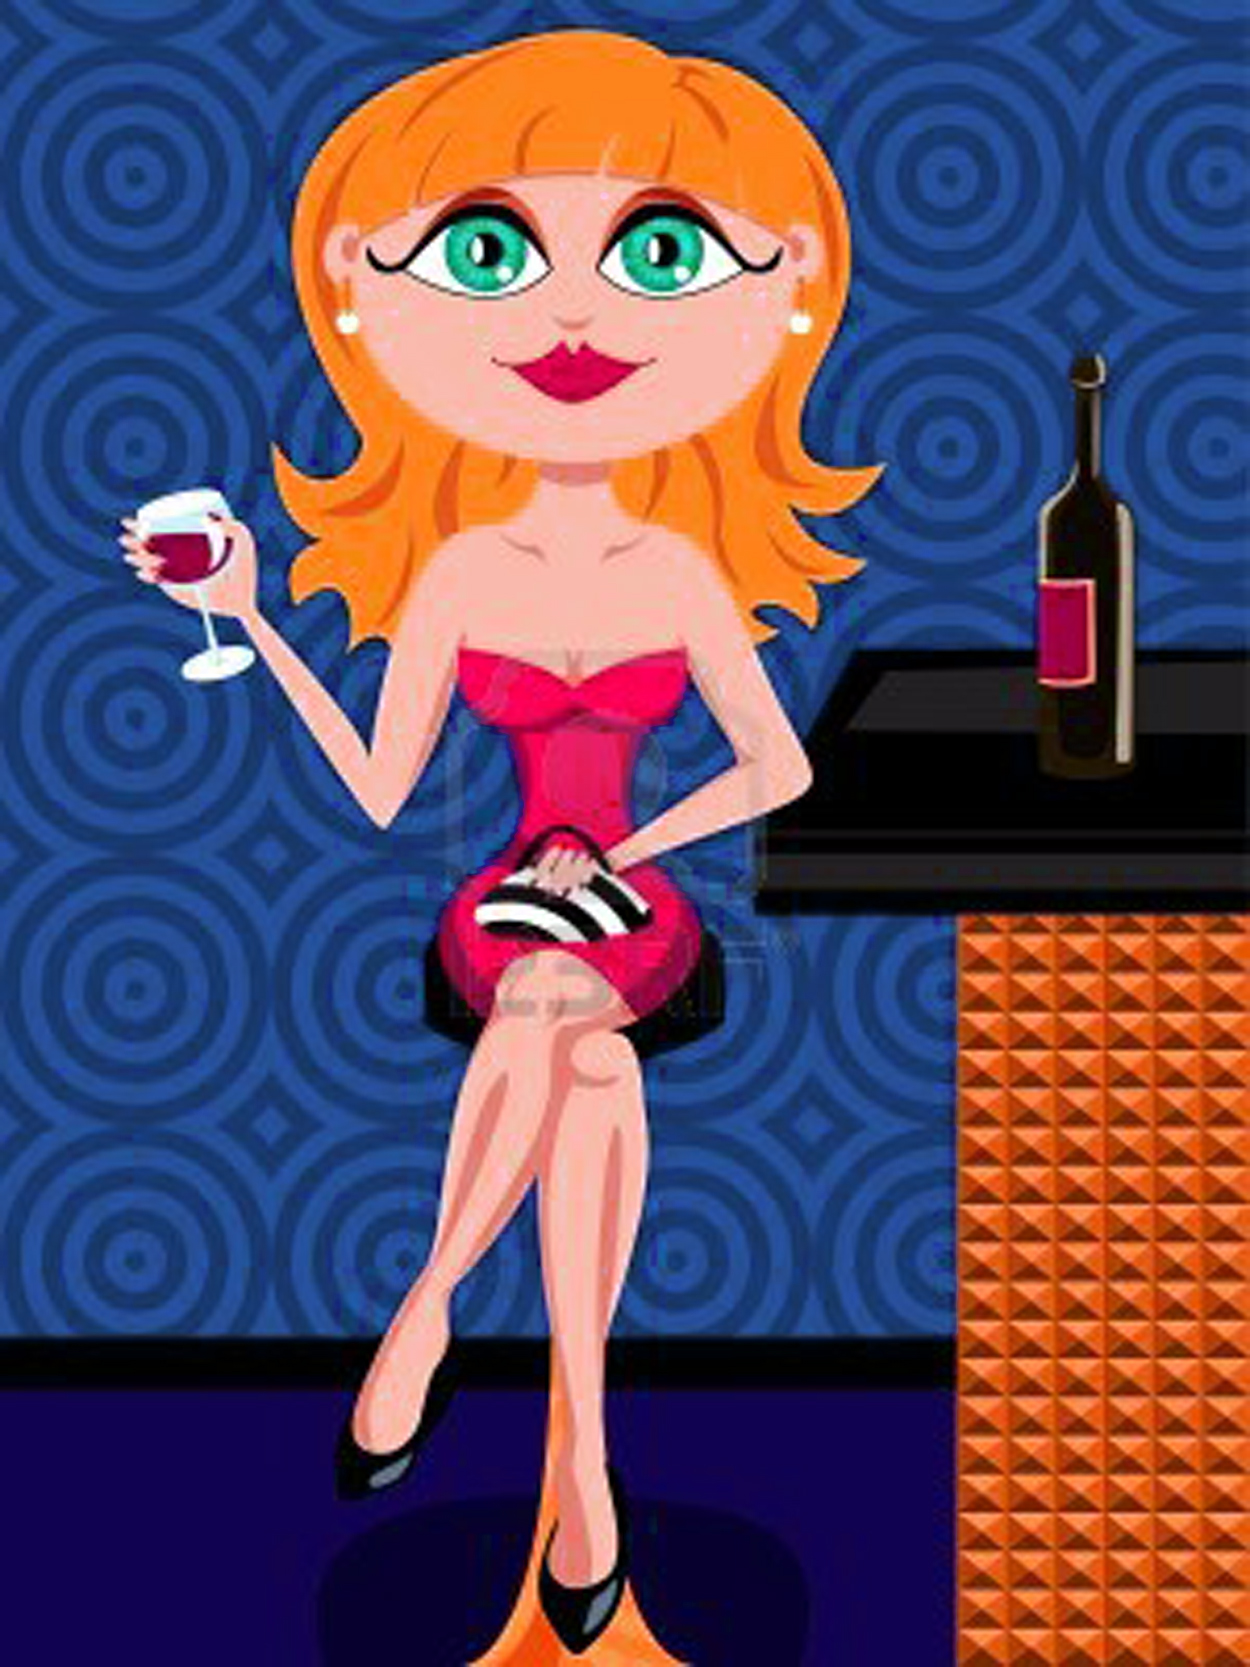 10955470-bella-bionda-donna-personaggio-dei-cartoni-animati-in-un-vestito-rosso-a-bere-un-bicchiere-di-vino-a[1] (2).jpg